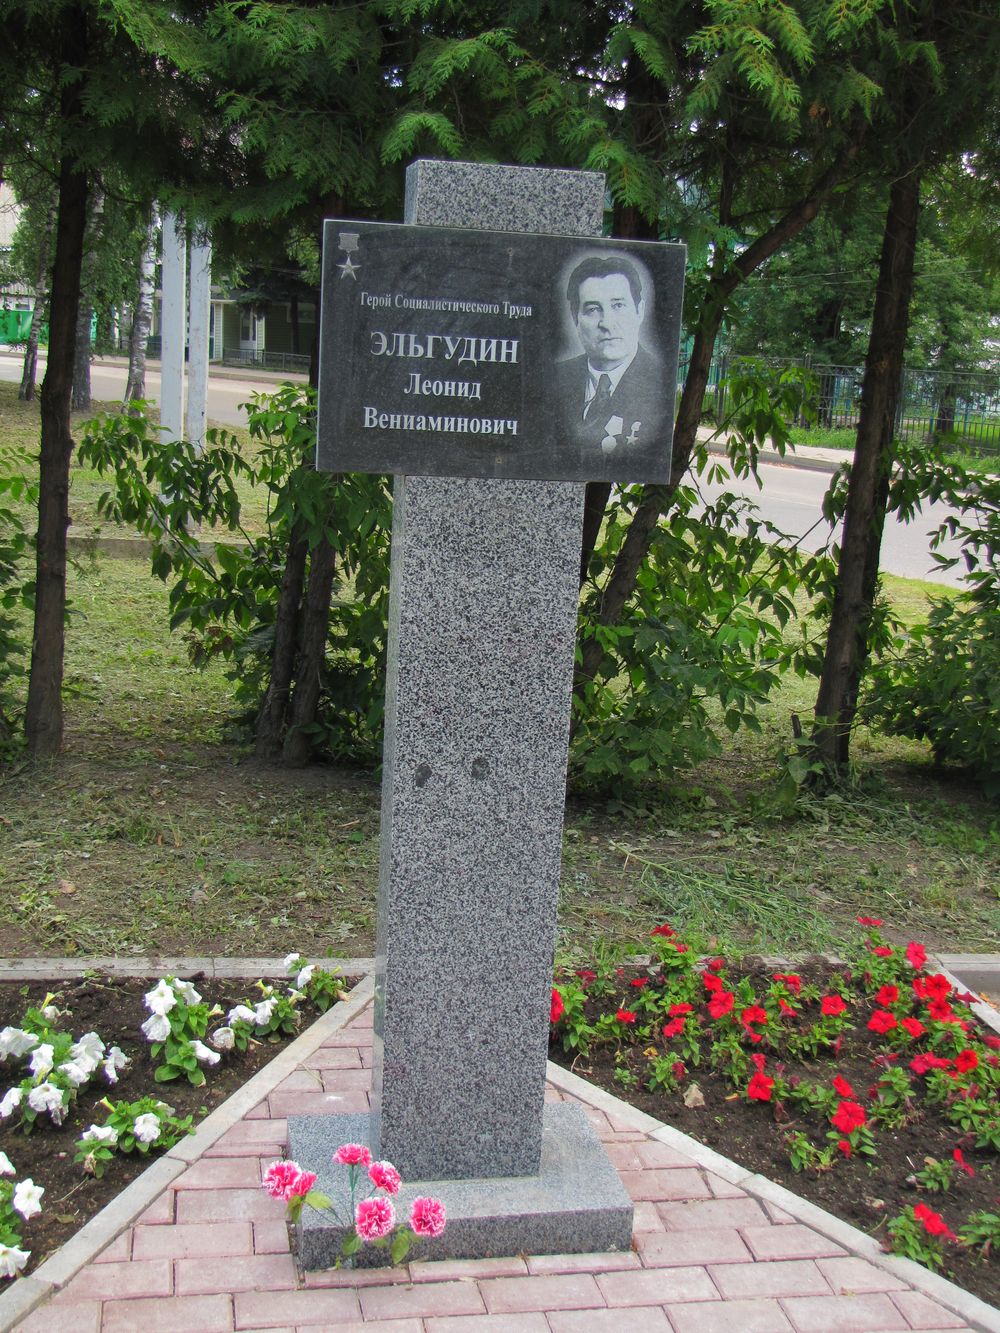 Мемориальная доска в честь Эльгудина Леонида.